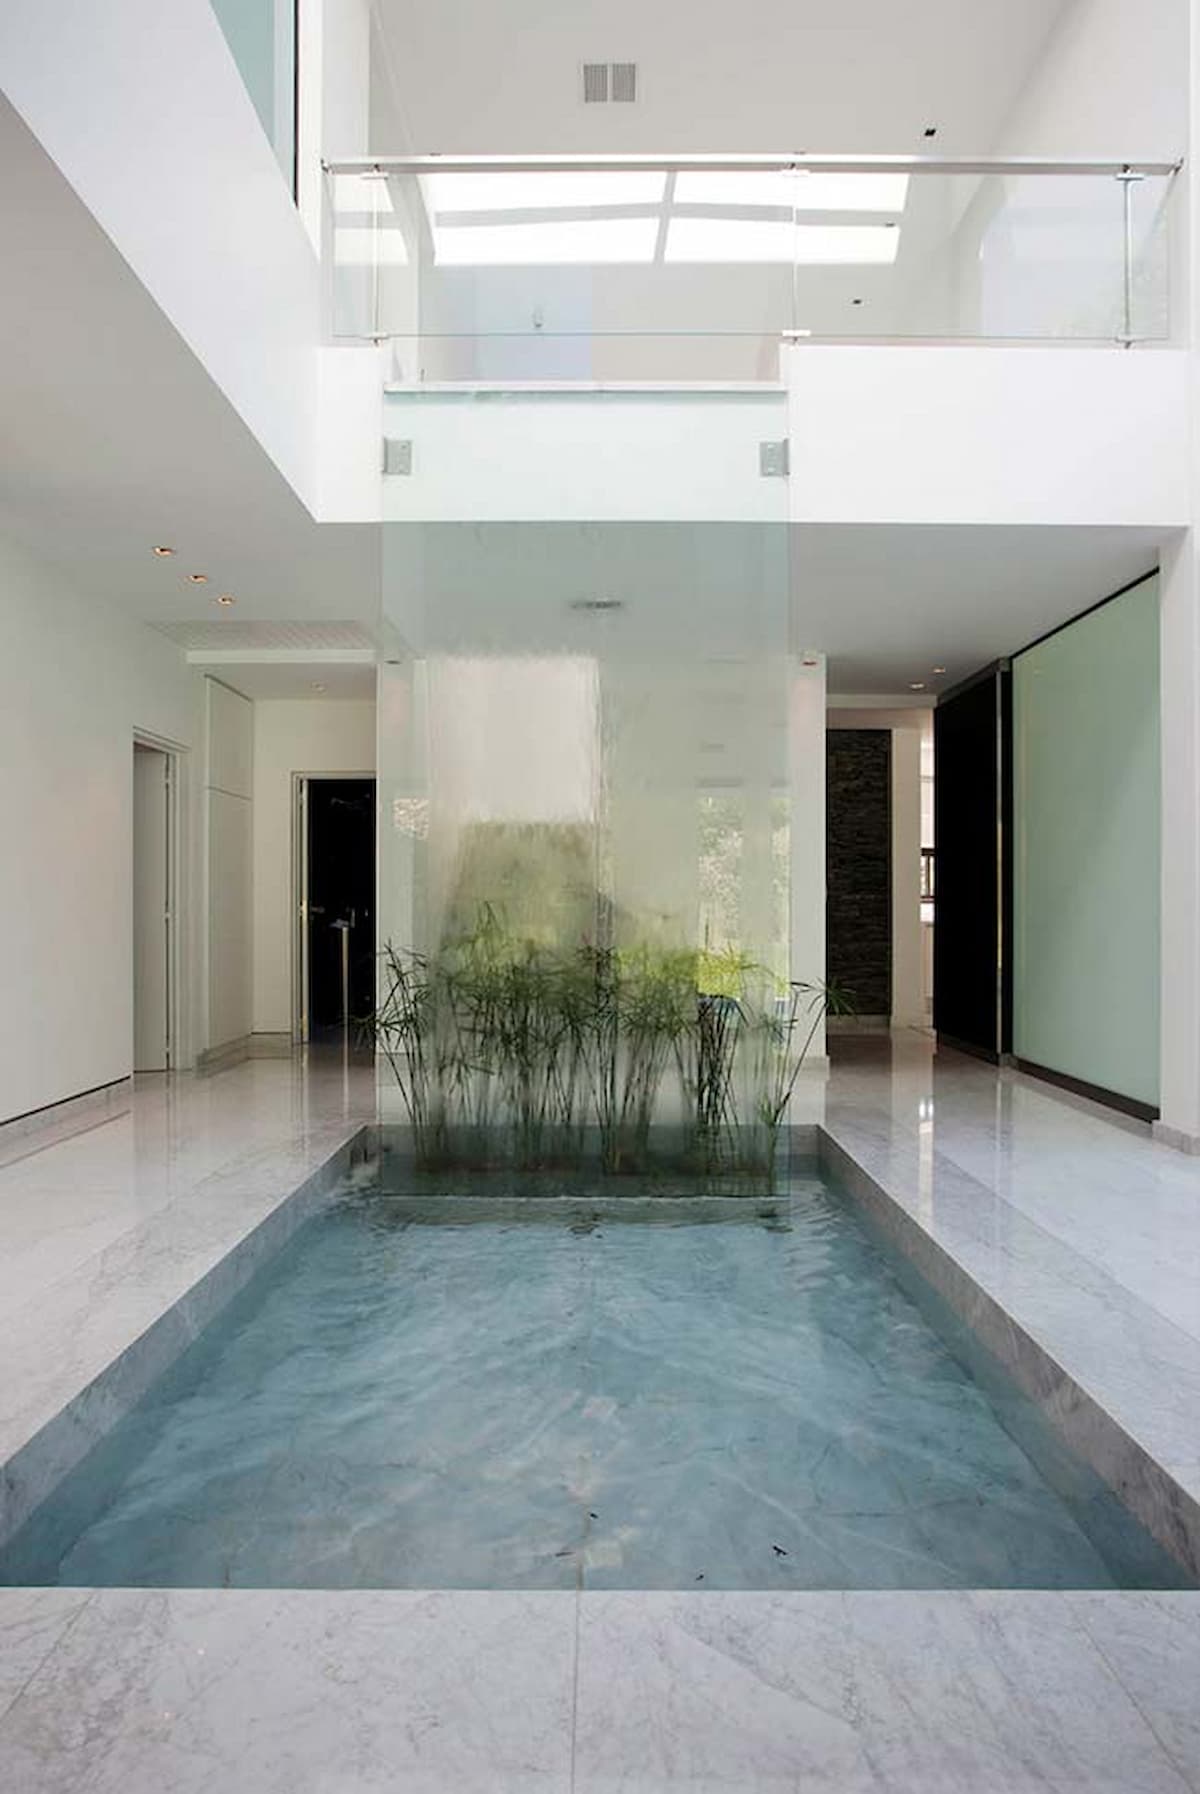 piso de mármore para piscina